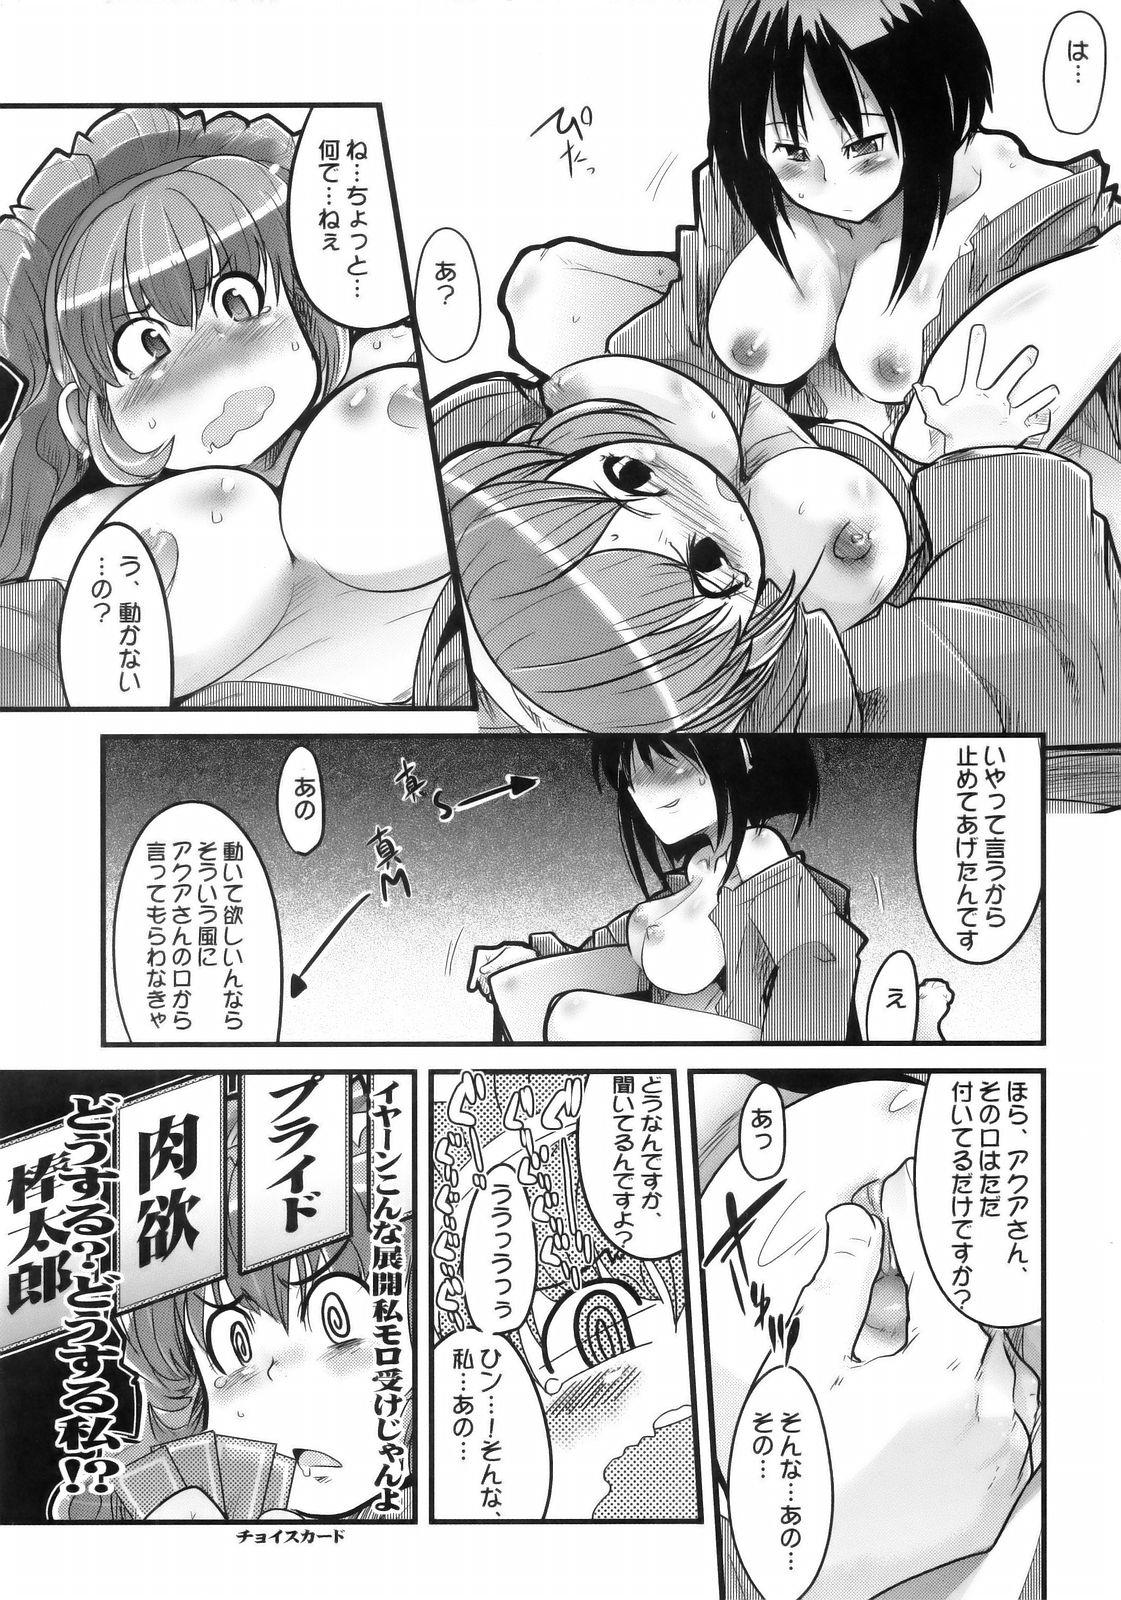 Shesafreak Boku no Watashi no Super Bobobbo Taisen MGJOX - Super robot wars Sesso - Page 12